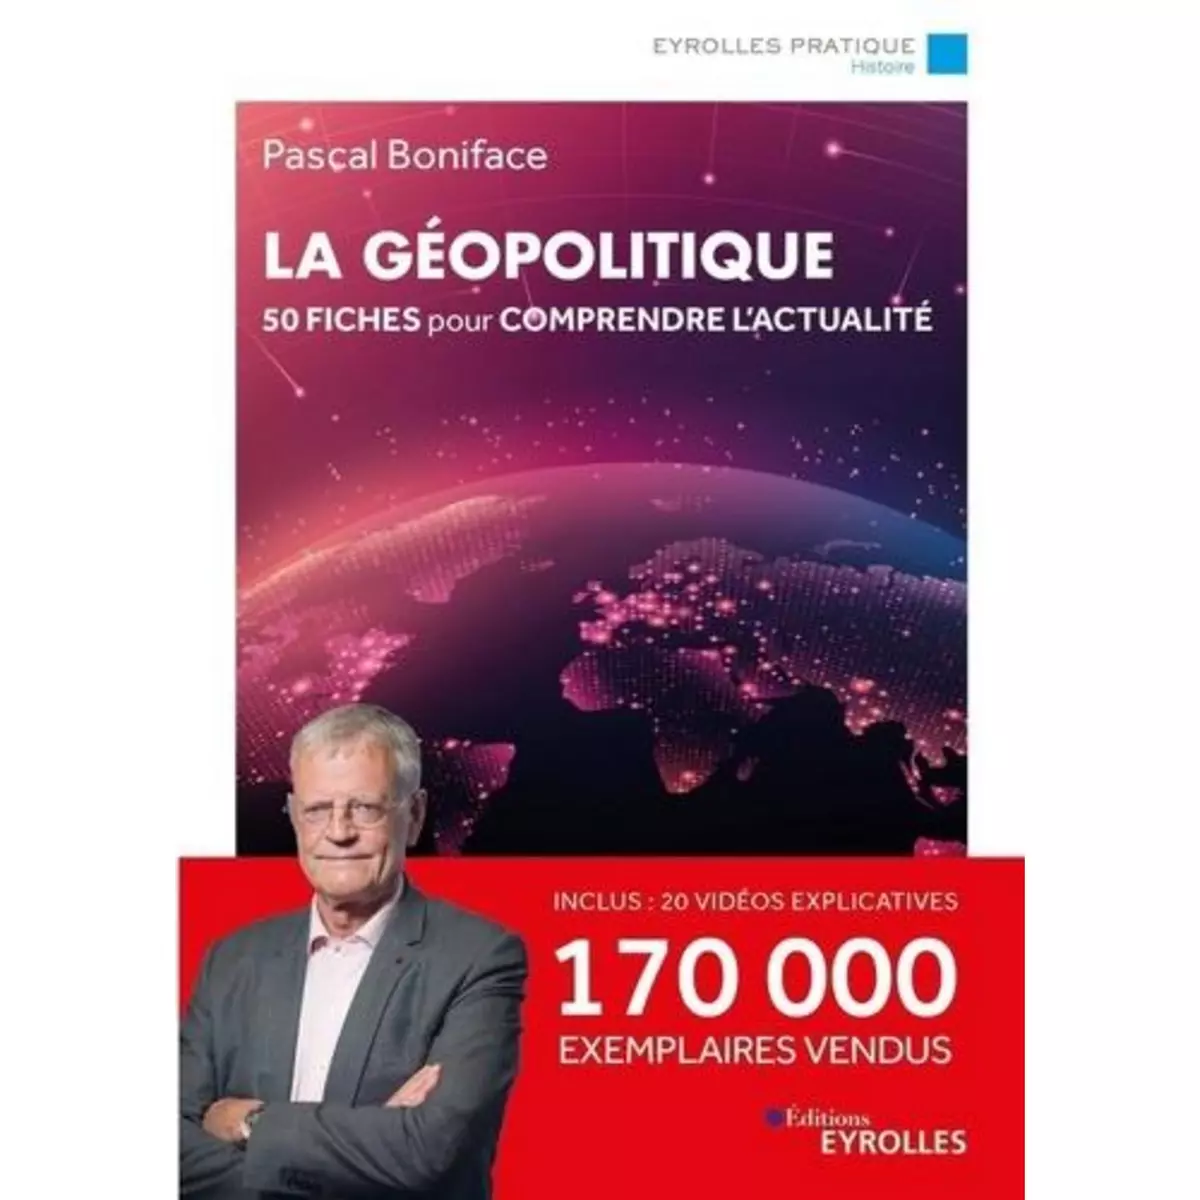  LA GEOPOLITIQUE. 50 FICHES POUR COMPRENDRE L'ACTUALITE, Boniface Pascal